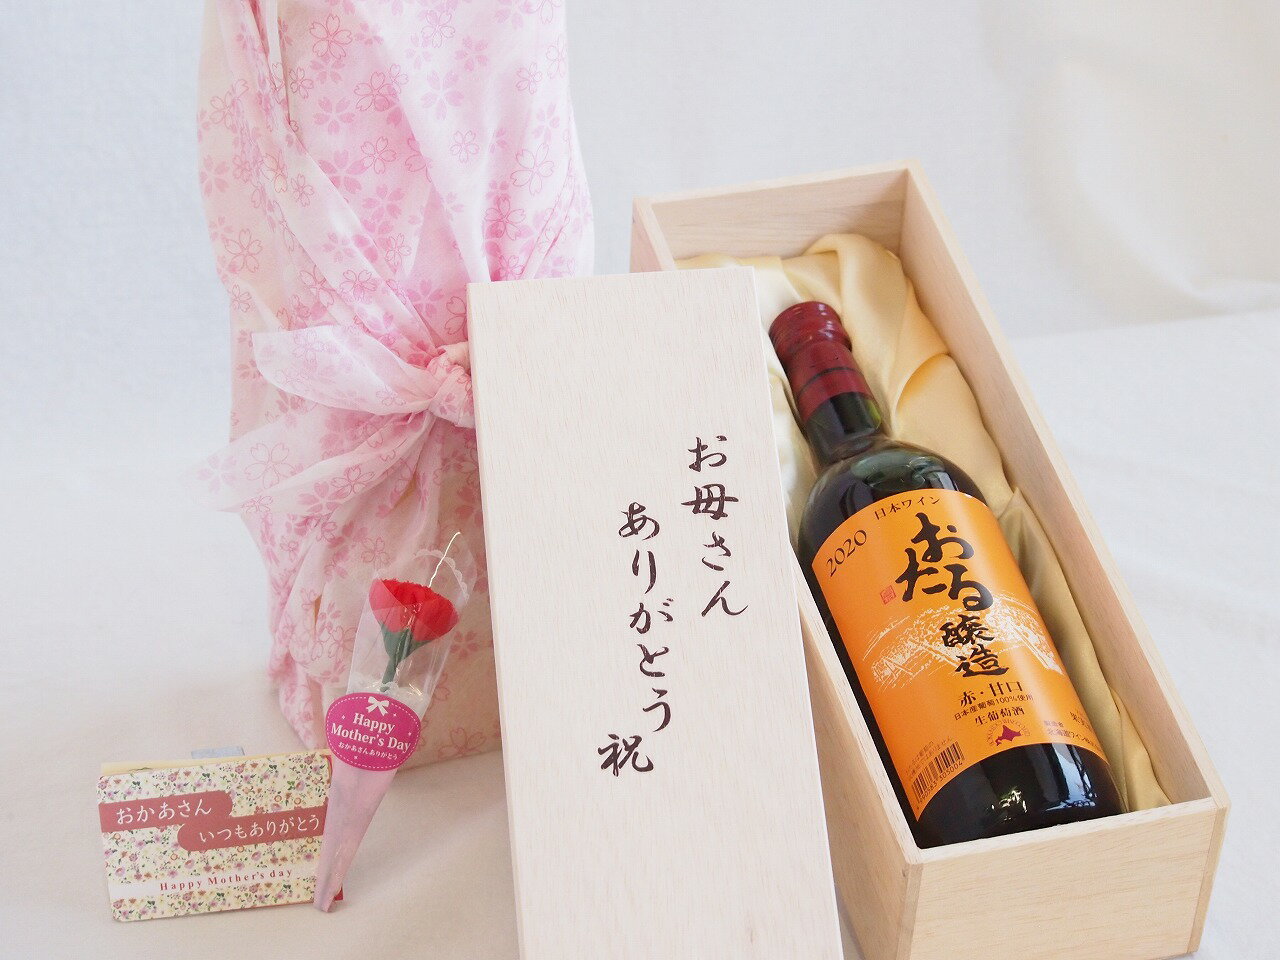 母の日 お母さんありがとう木箱セット 日本産葡萄100%使用おたる醸造赤ワイン甘口 北海道 720ml 母の日カードとカーネイション付